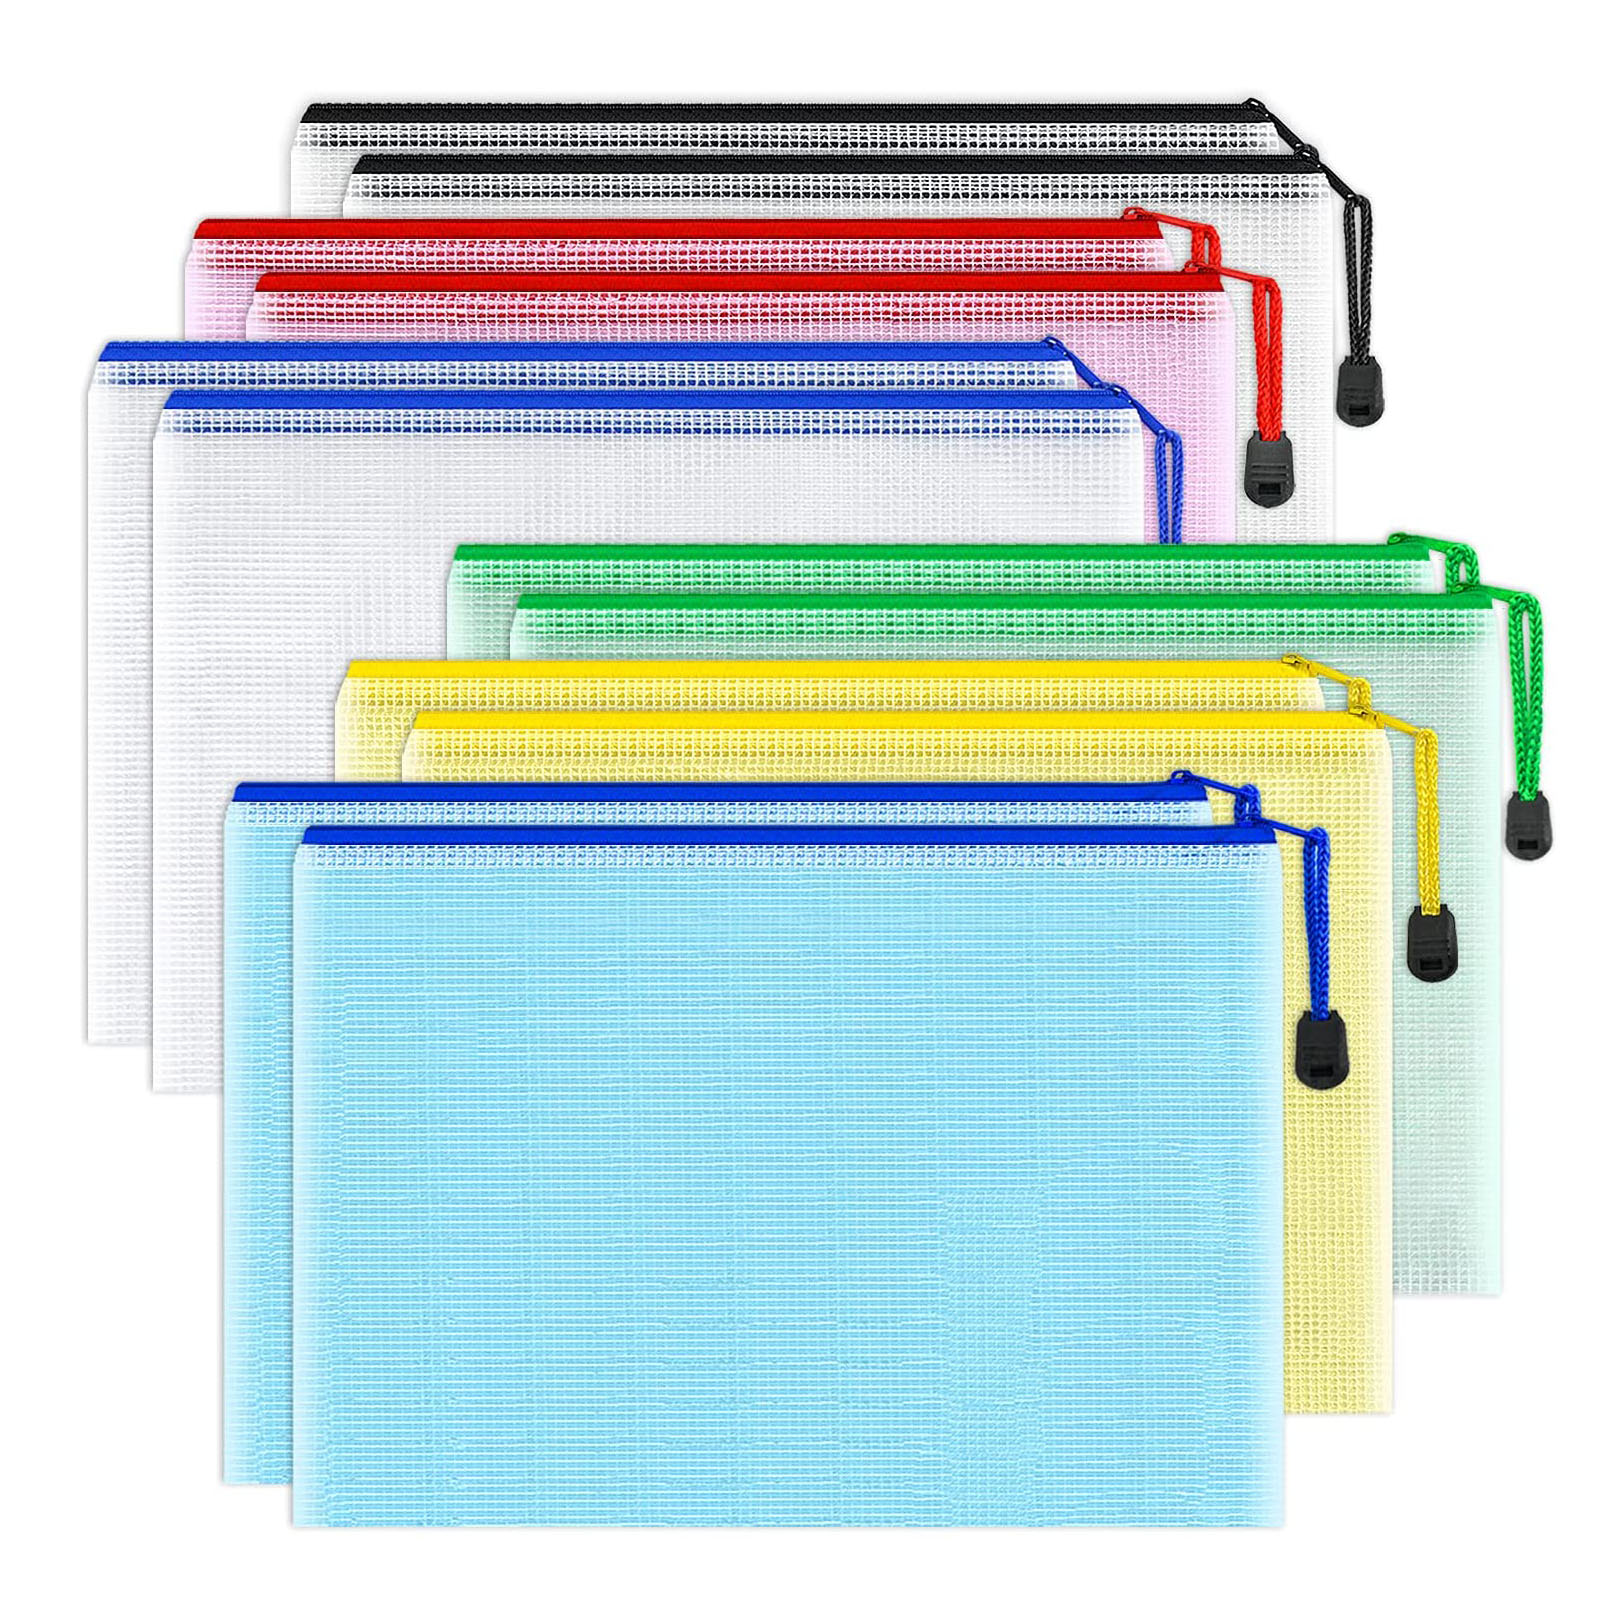 12 팩 A5 여러 가지 빛깔의 플라스틱 메쉬 지퍼 주머니 문서 가방, 학교 사무실 여행 스토리지에 대한 방수 우편 파일 폴더